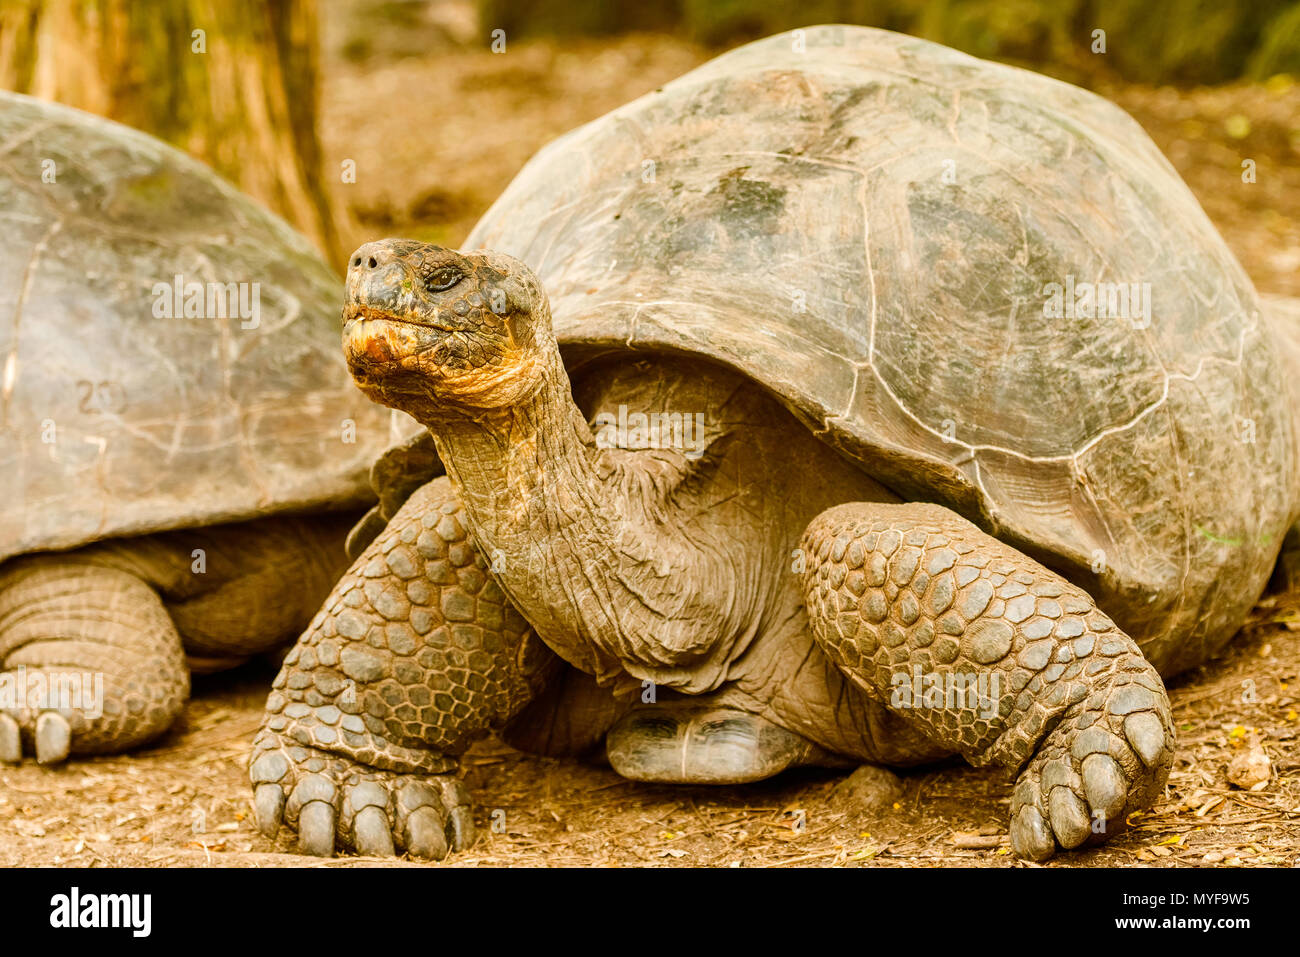 Riesige Schildkröte Florena Insel. Galapagos Schildkröte ist das größte lebende Arten der Schildkröte, erreichen ein Gewicht von über 400 kg, Länge 1,8 m Stockfoto